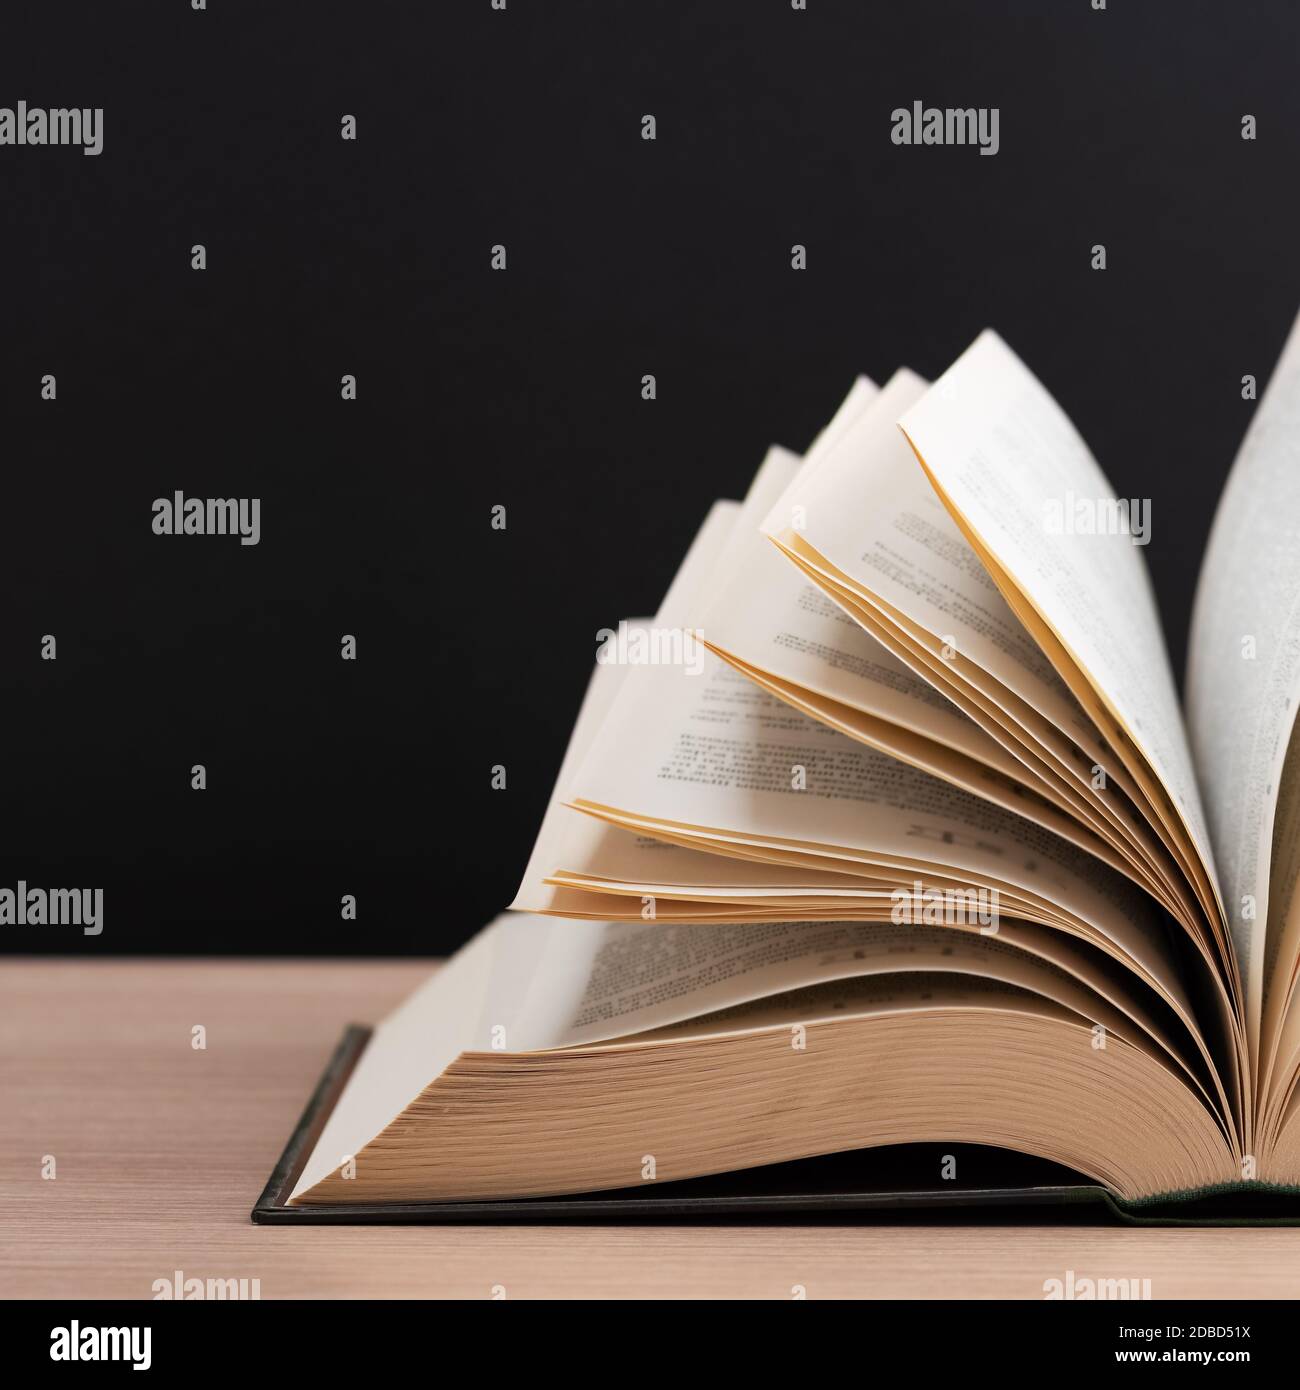 Un grand livre épais de couverture rigide se trouve sur une table en bois clair. Le livre est ouvert, les feuilles de la page sont bronzées et le dos est noir Banque D'Images